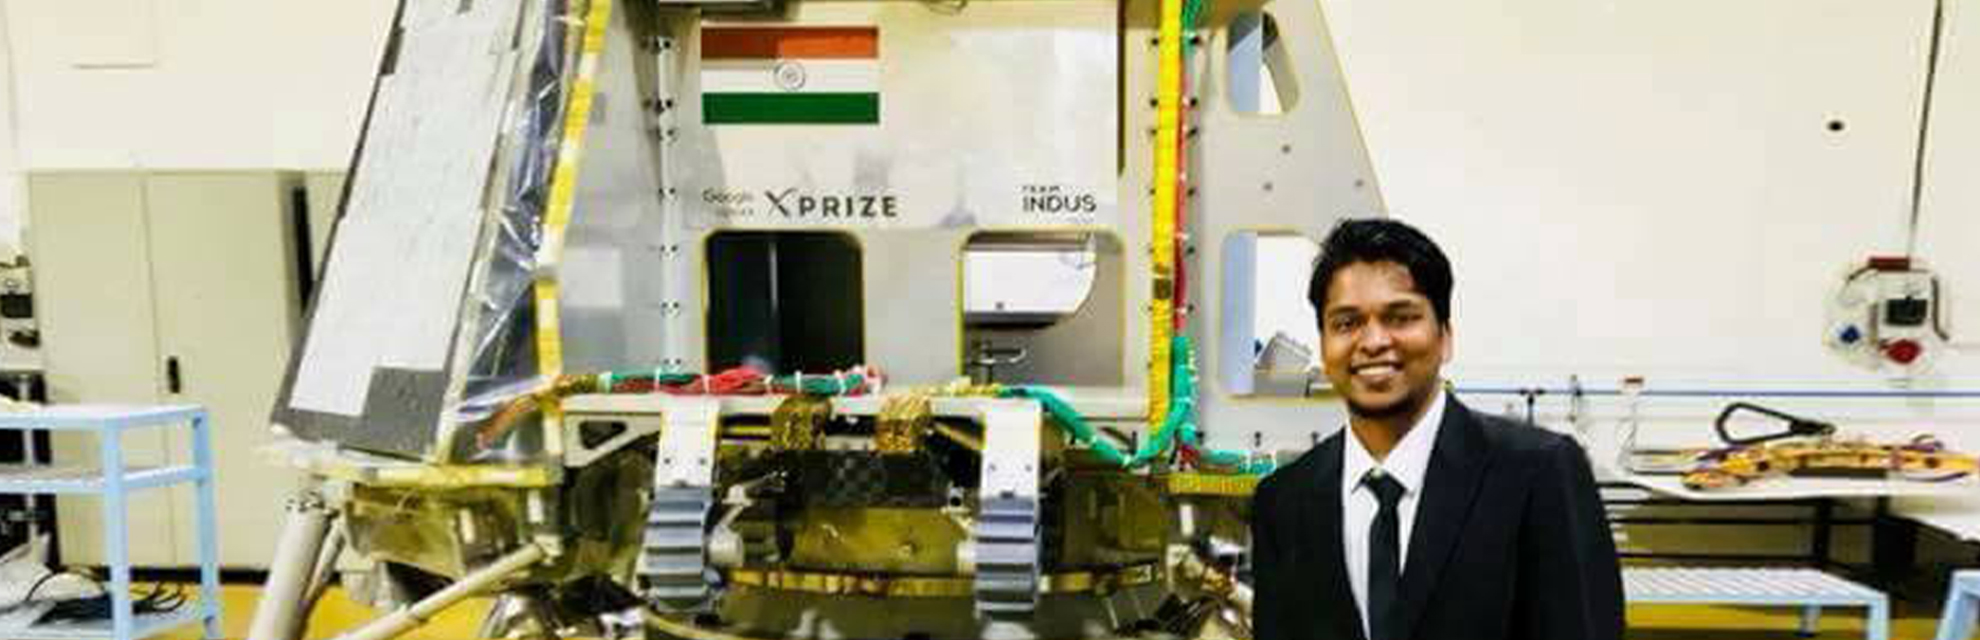 驻日印度科学家 Aditya Baraskar 博士正在研究无线电力发电